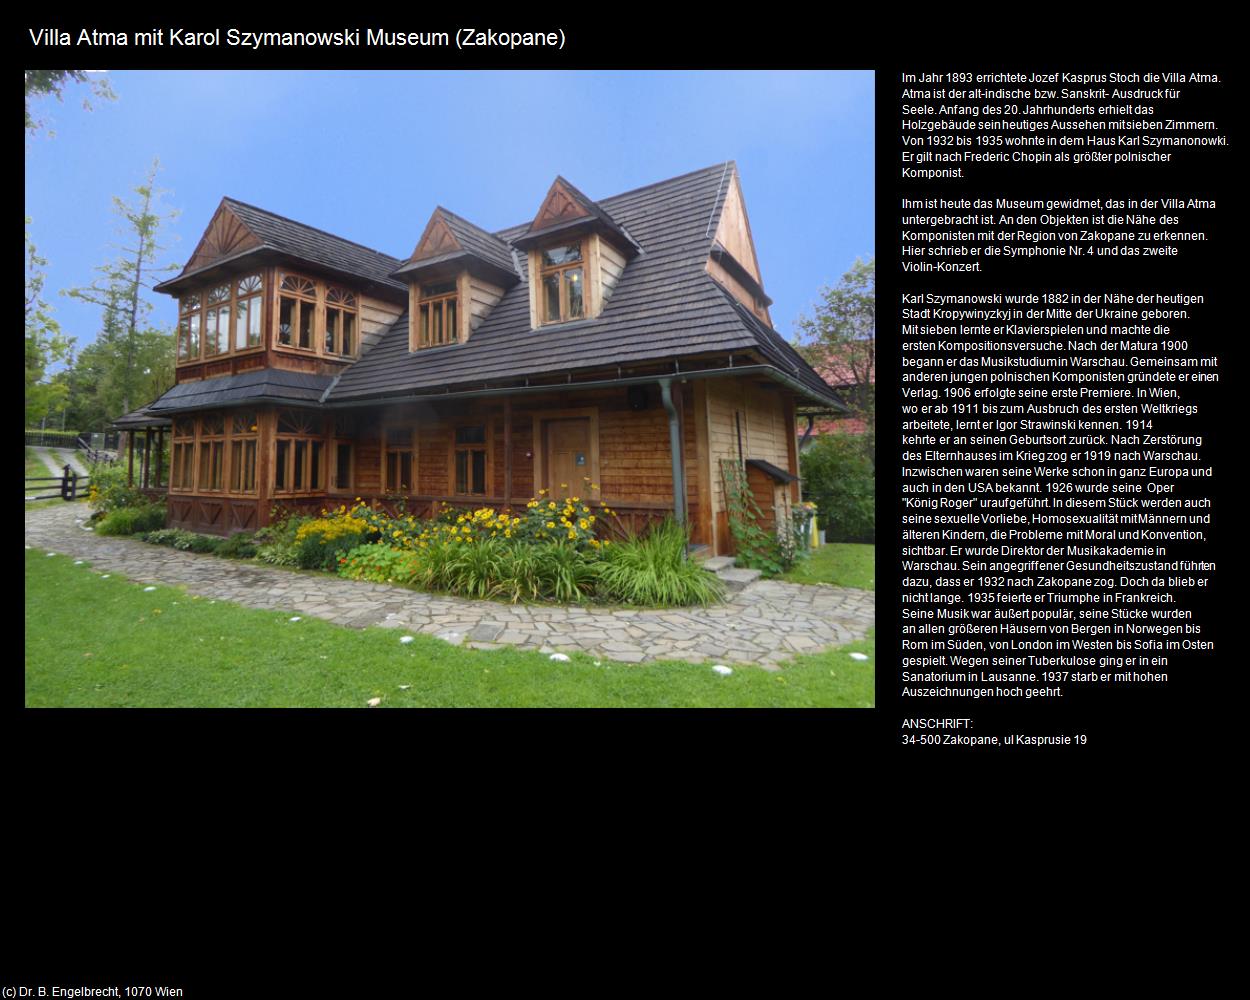 Villa Atma mit Karol Szymanowski Museum (Zakopane) in POLEN-Galizien